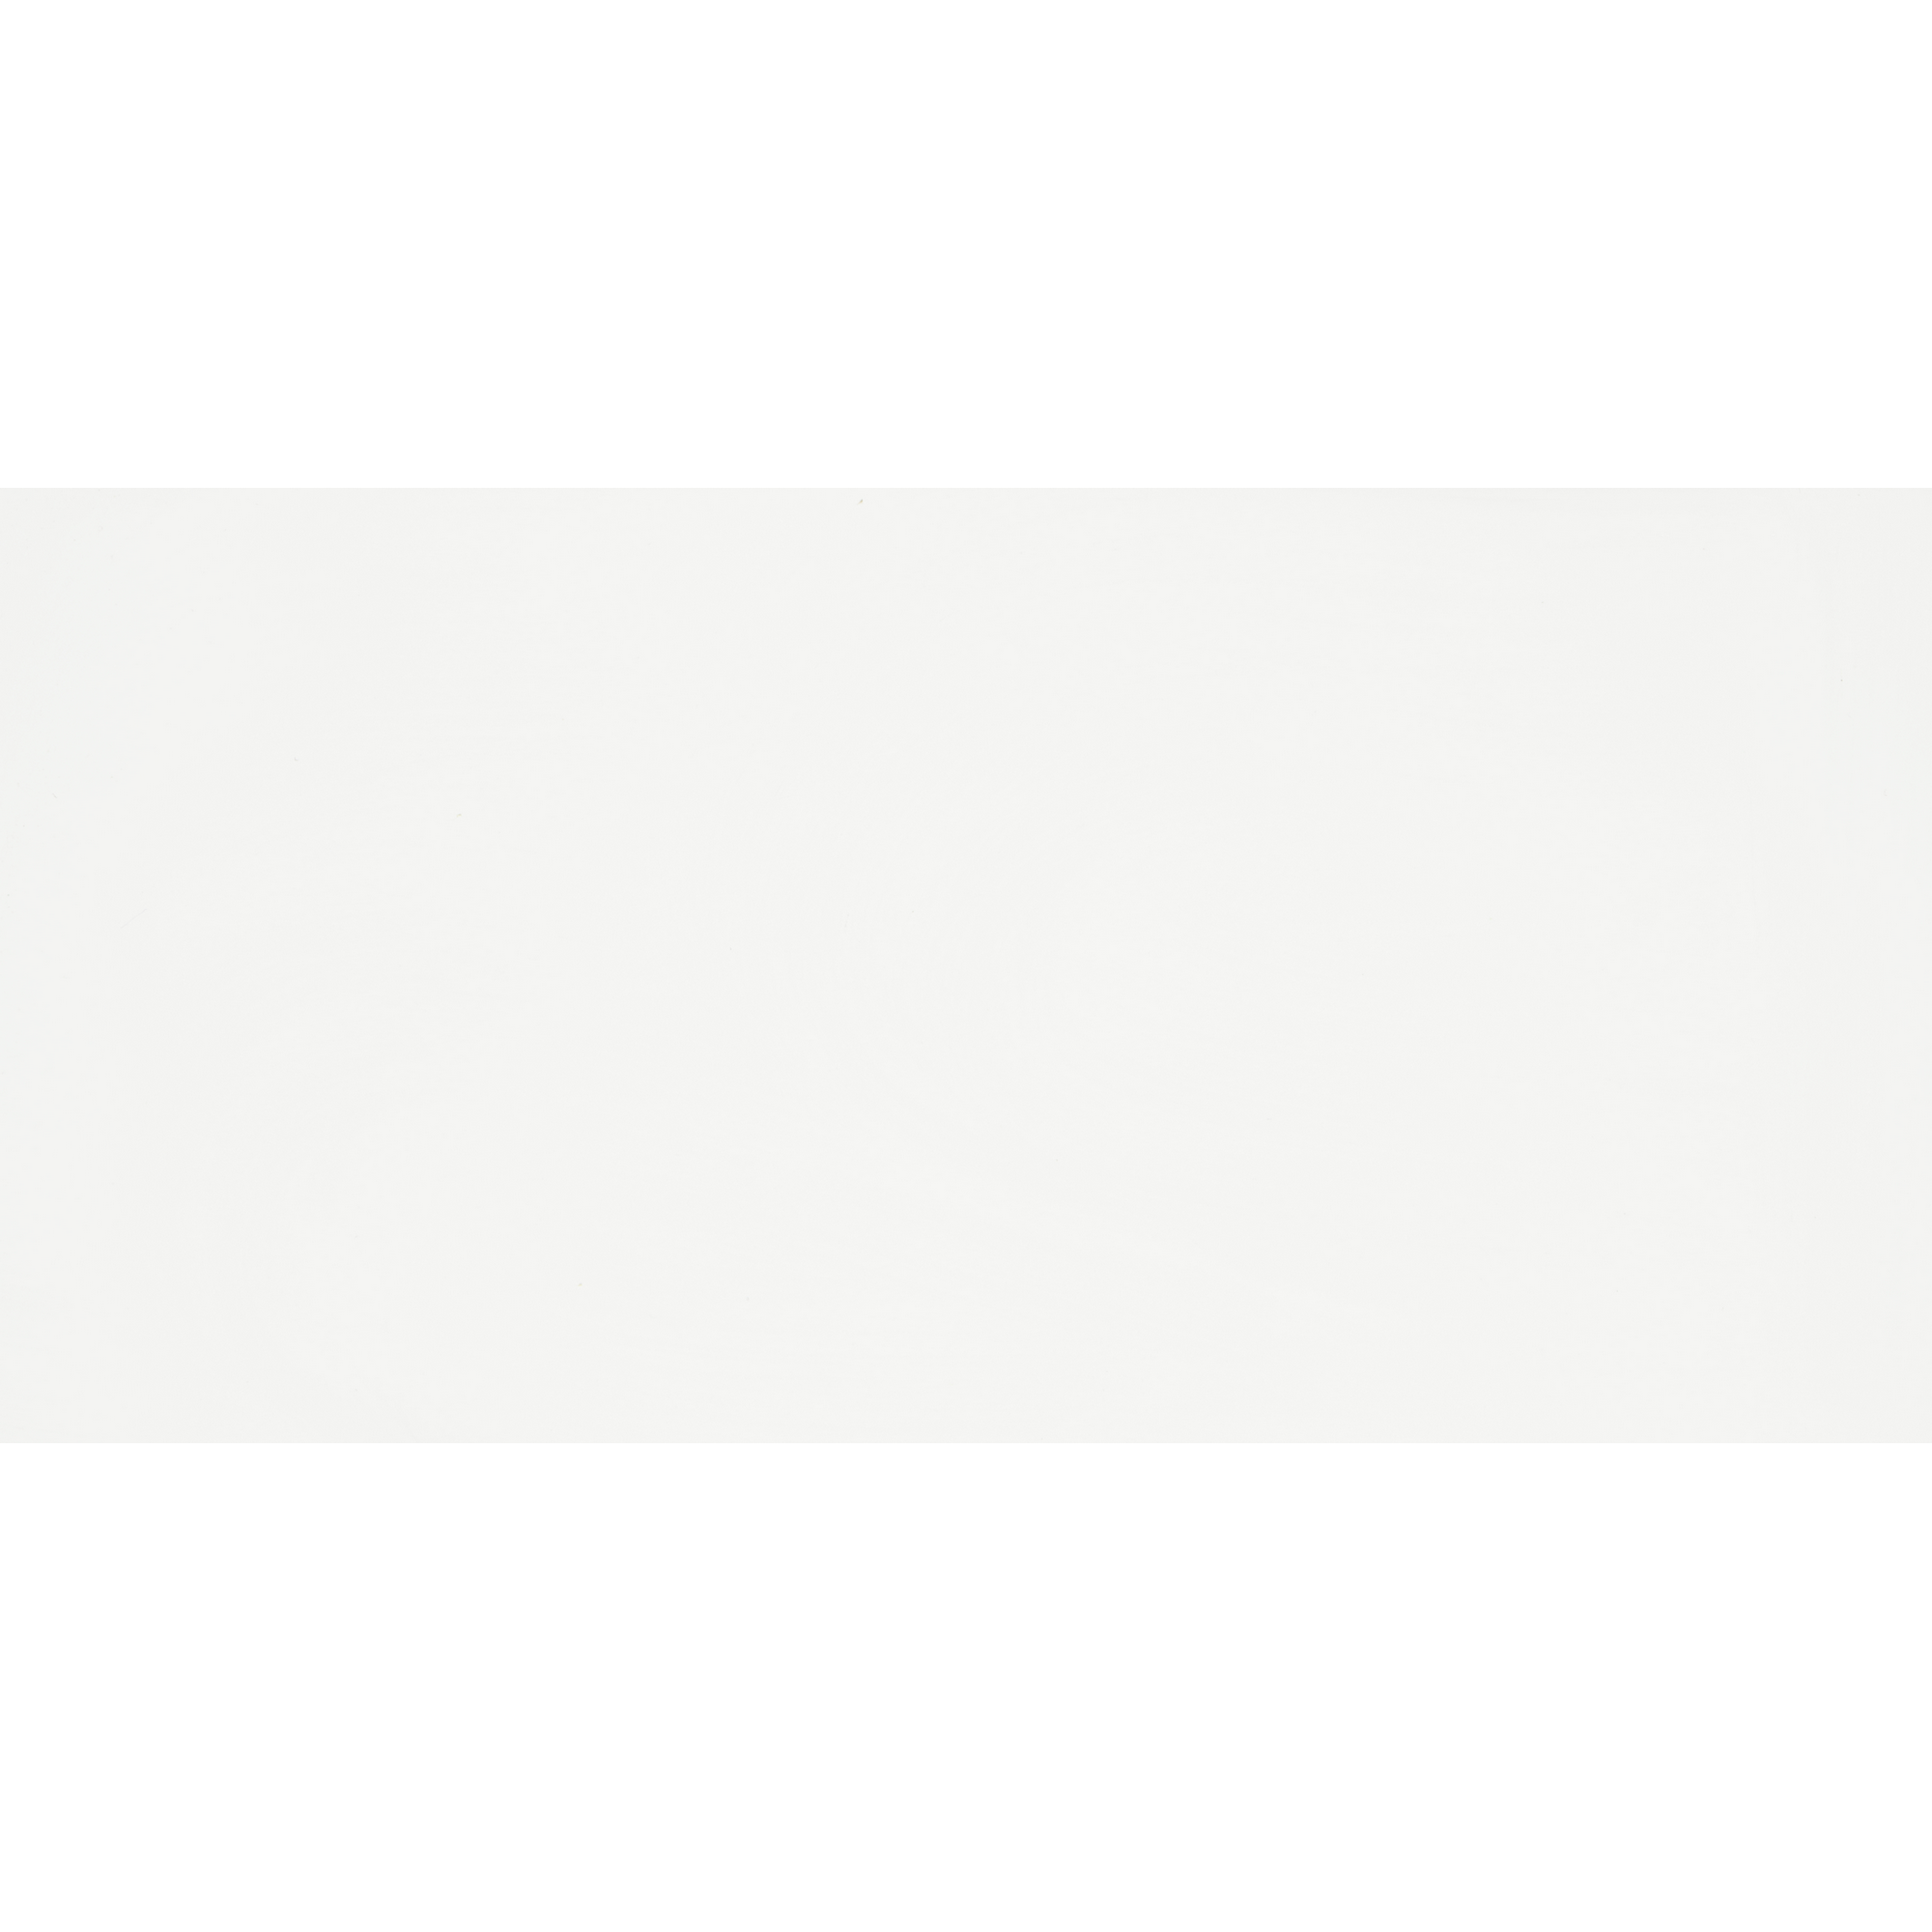 Wandfliese 'Bianca' Steingut weiß glänzend rektifiziert 29,8 x 59,8 cm + product picture